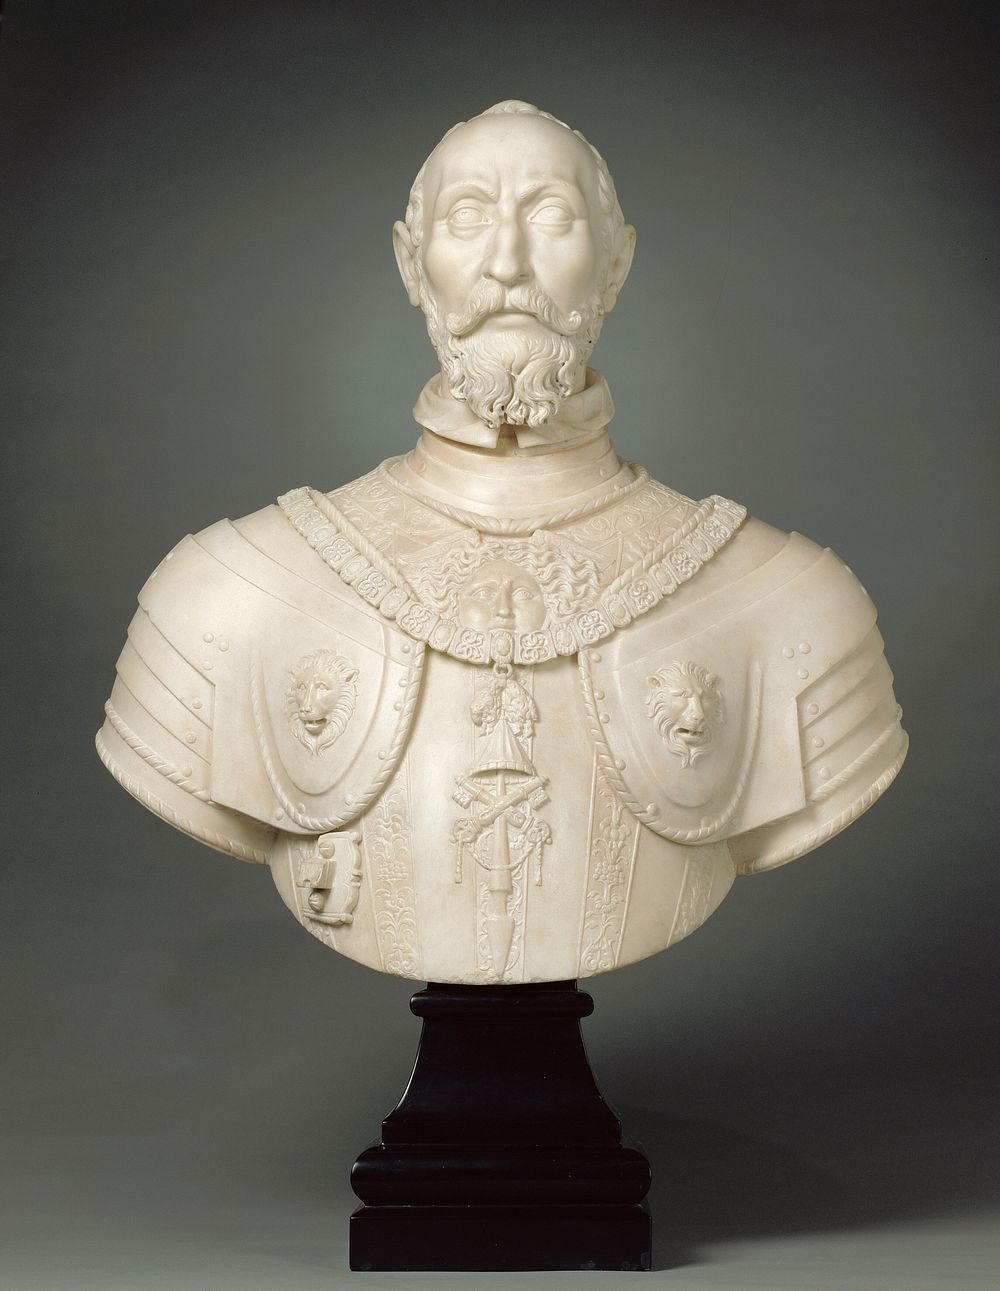 Bust of Ottavio Farnese (1524 - 1586) by Giovanni Battista della Porta